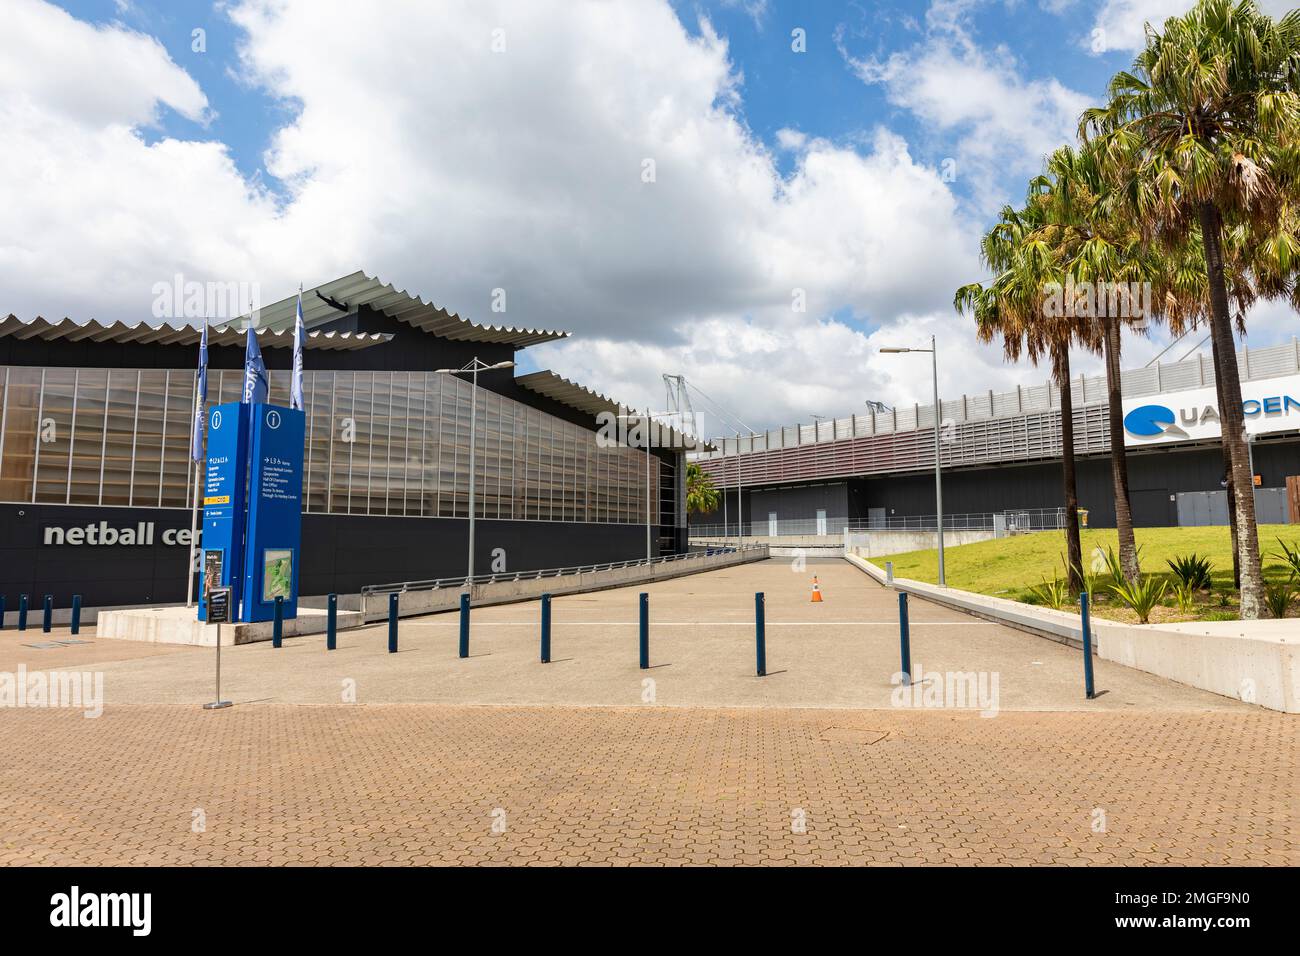 Il Sydney Olympic Park s[arene portuali che includono la struttura sportiva al coperto Netball Central, Western Sydney, NSW, Australia Foto Stock